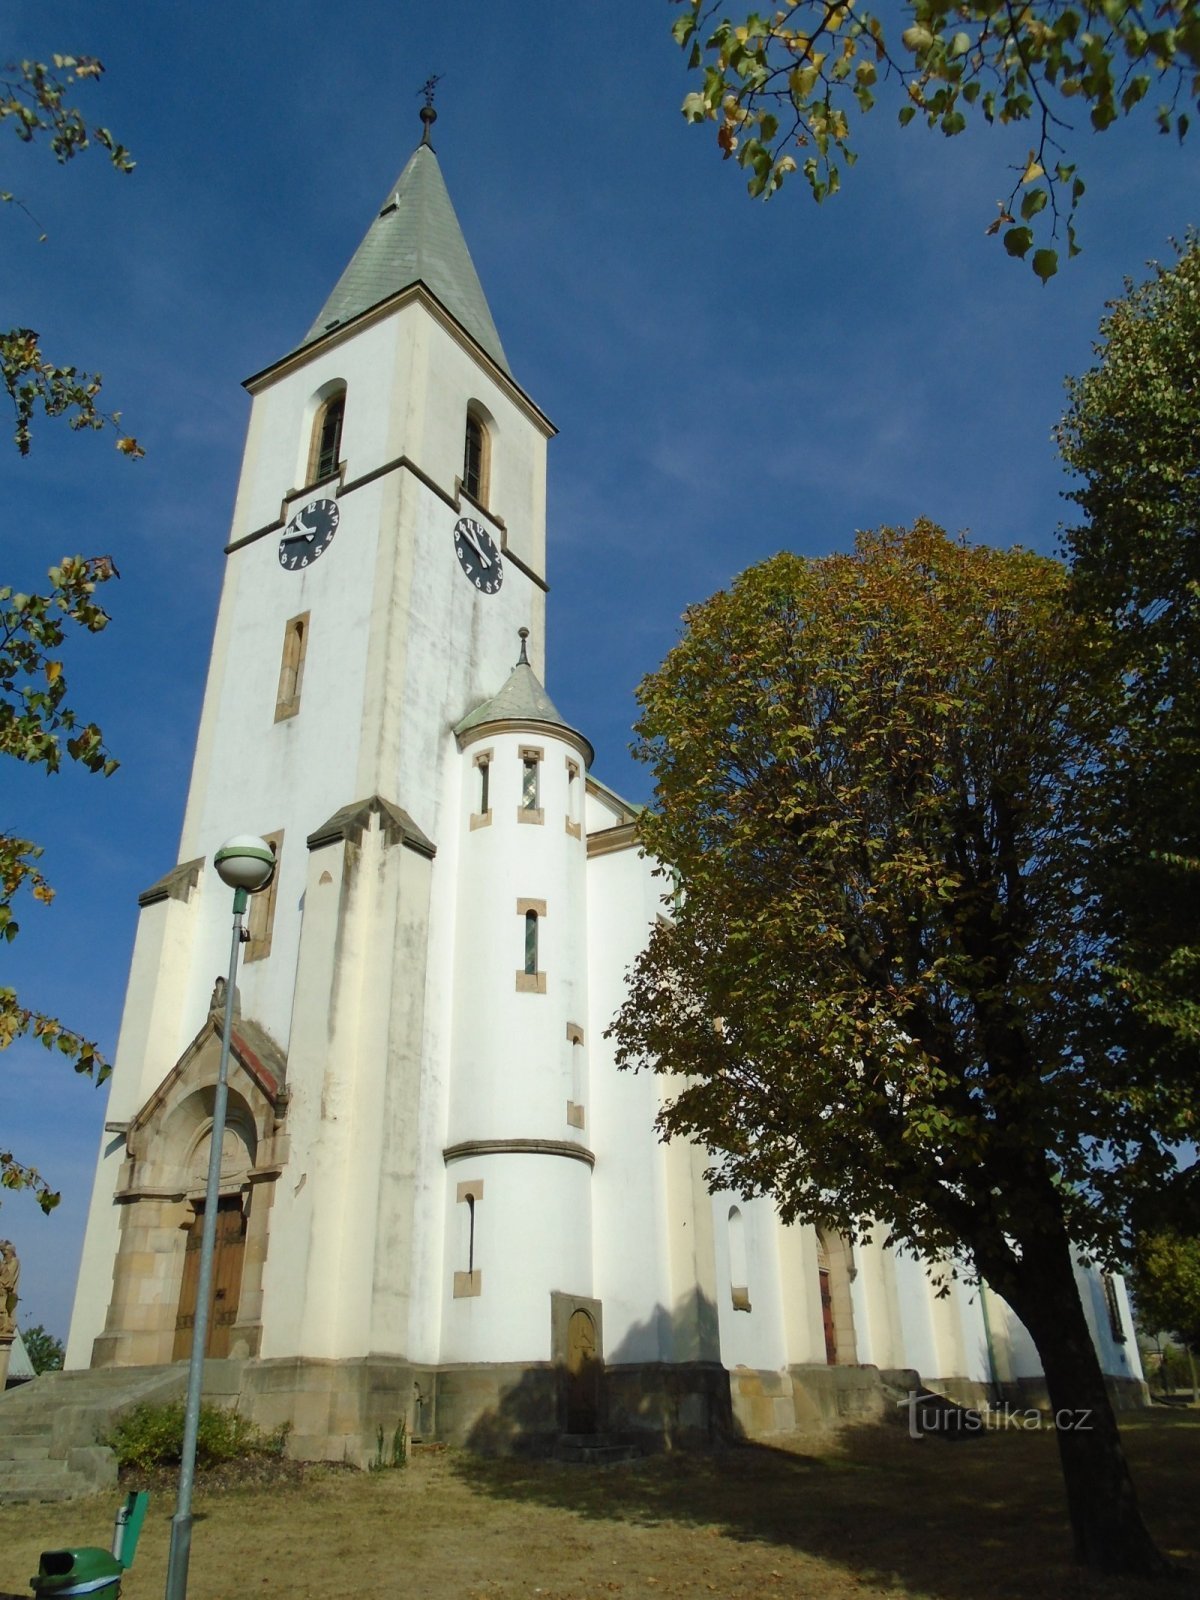 Nhà thờ St. James the Elder, sứ đồ (Stračov)